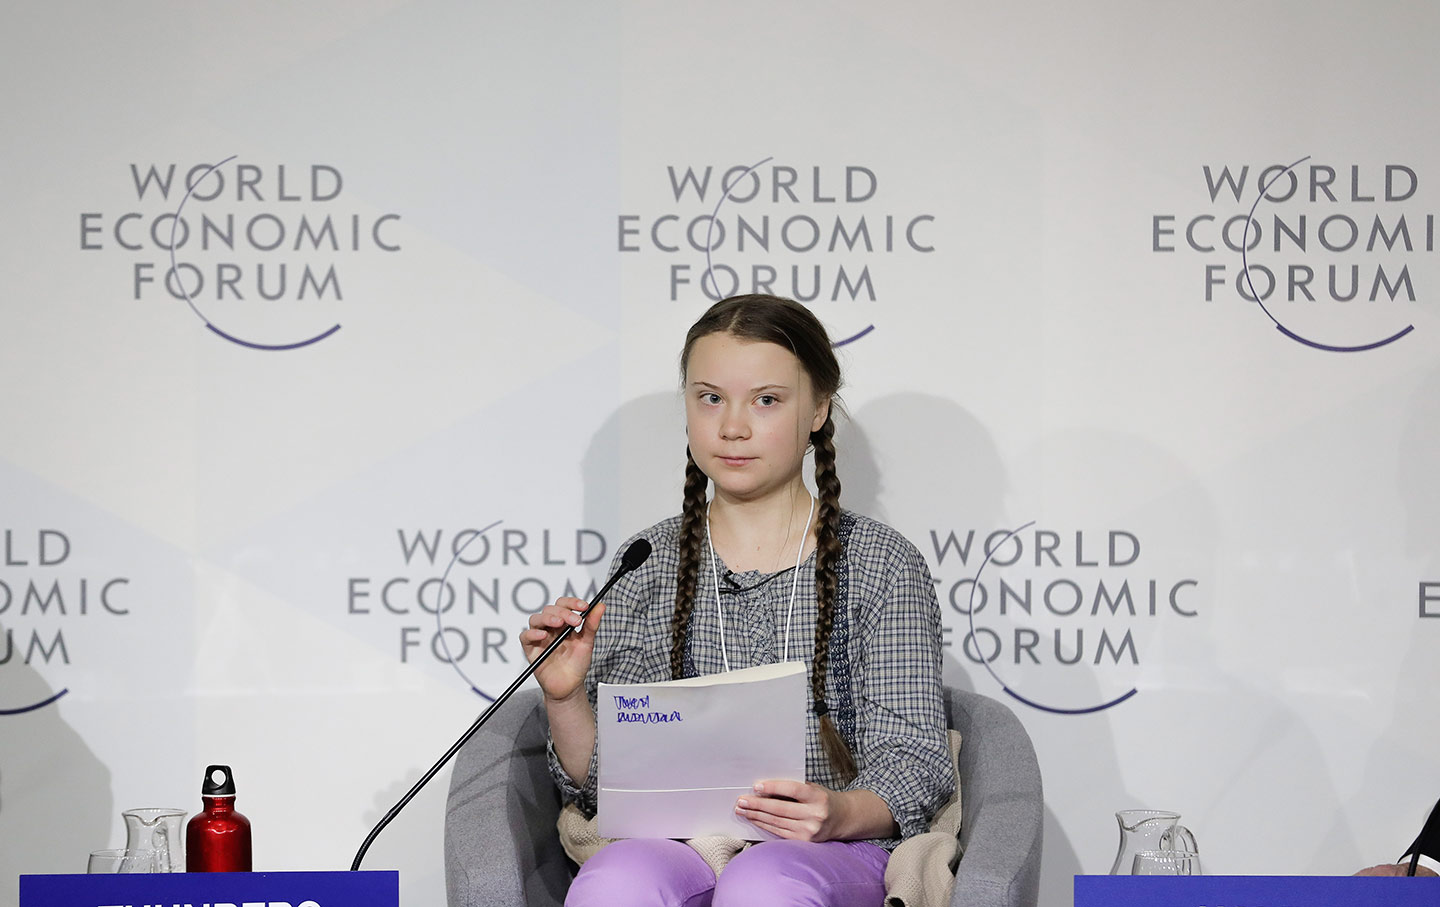 Hintergrundinformationen zu Greta Thunberg | uncut-news.ch1440 x 907